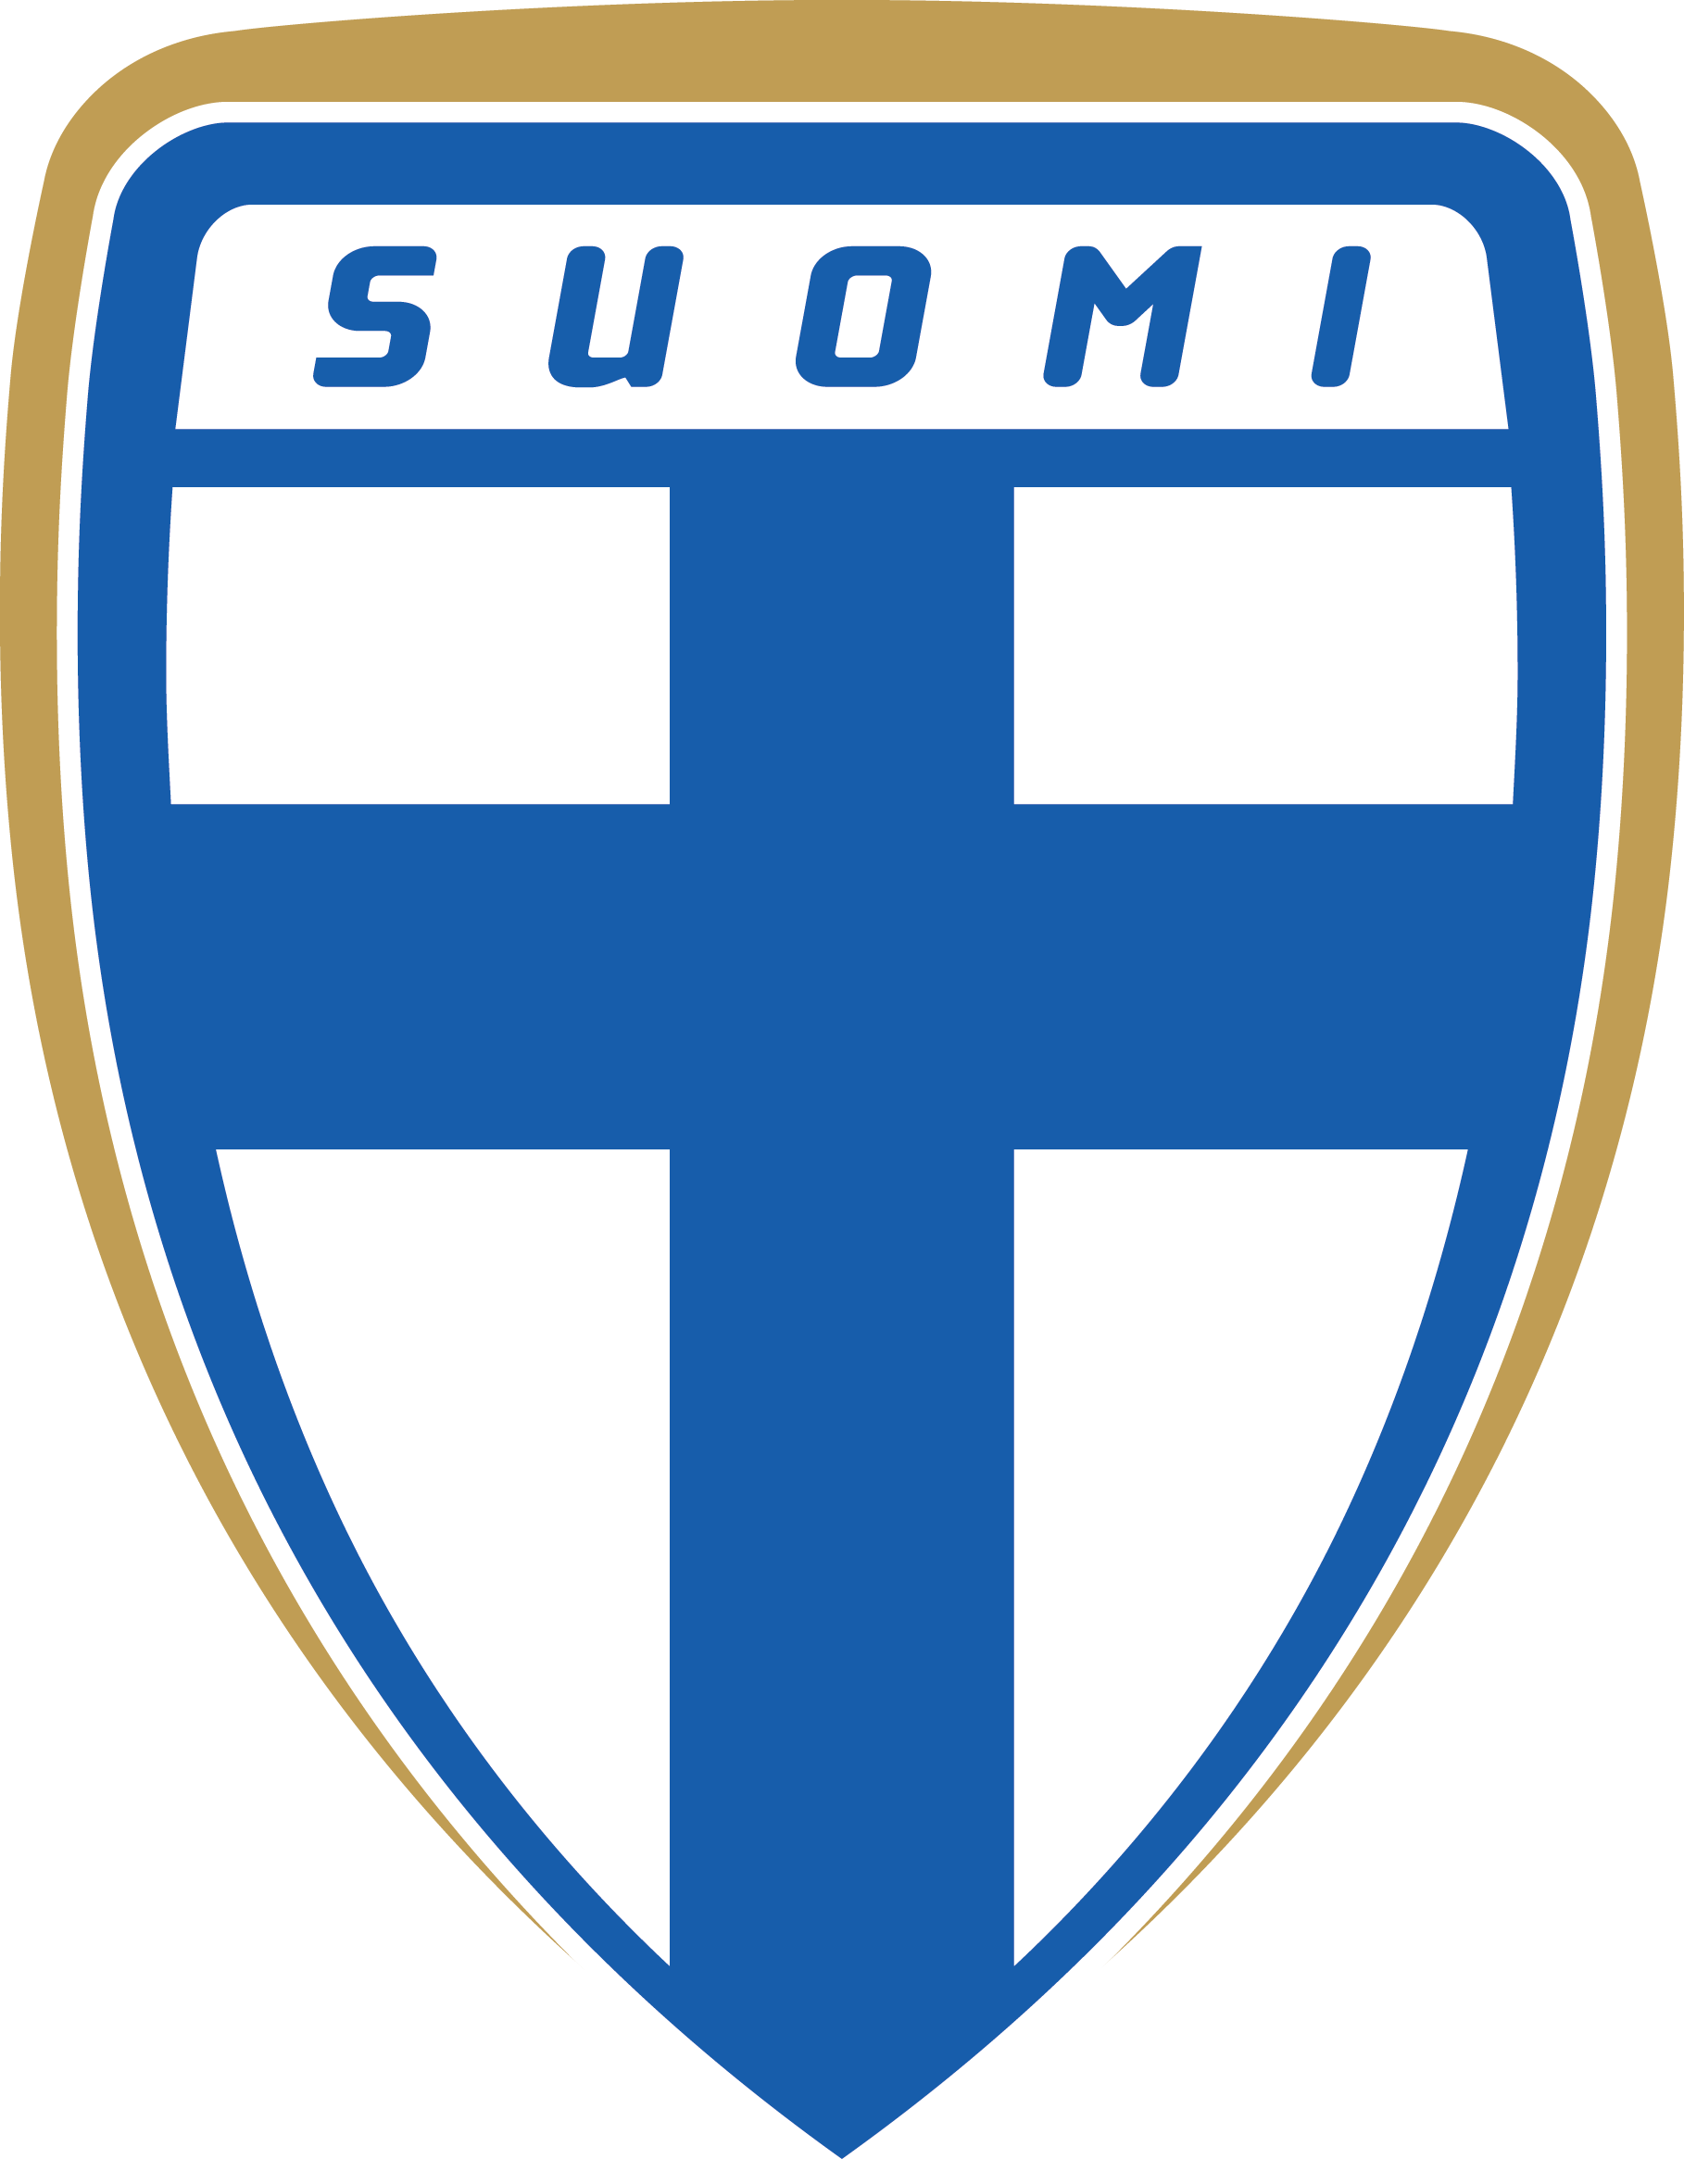 芬蘭國家男子足球隊(芬蘭國家足球隊)